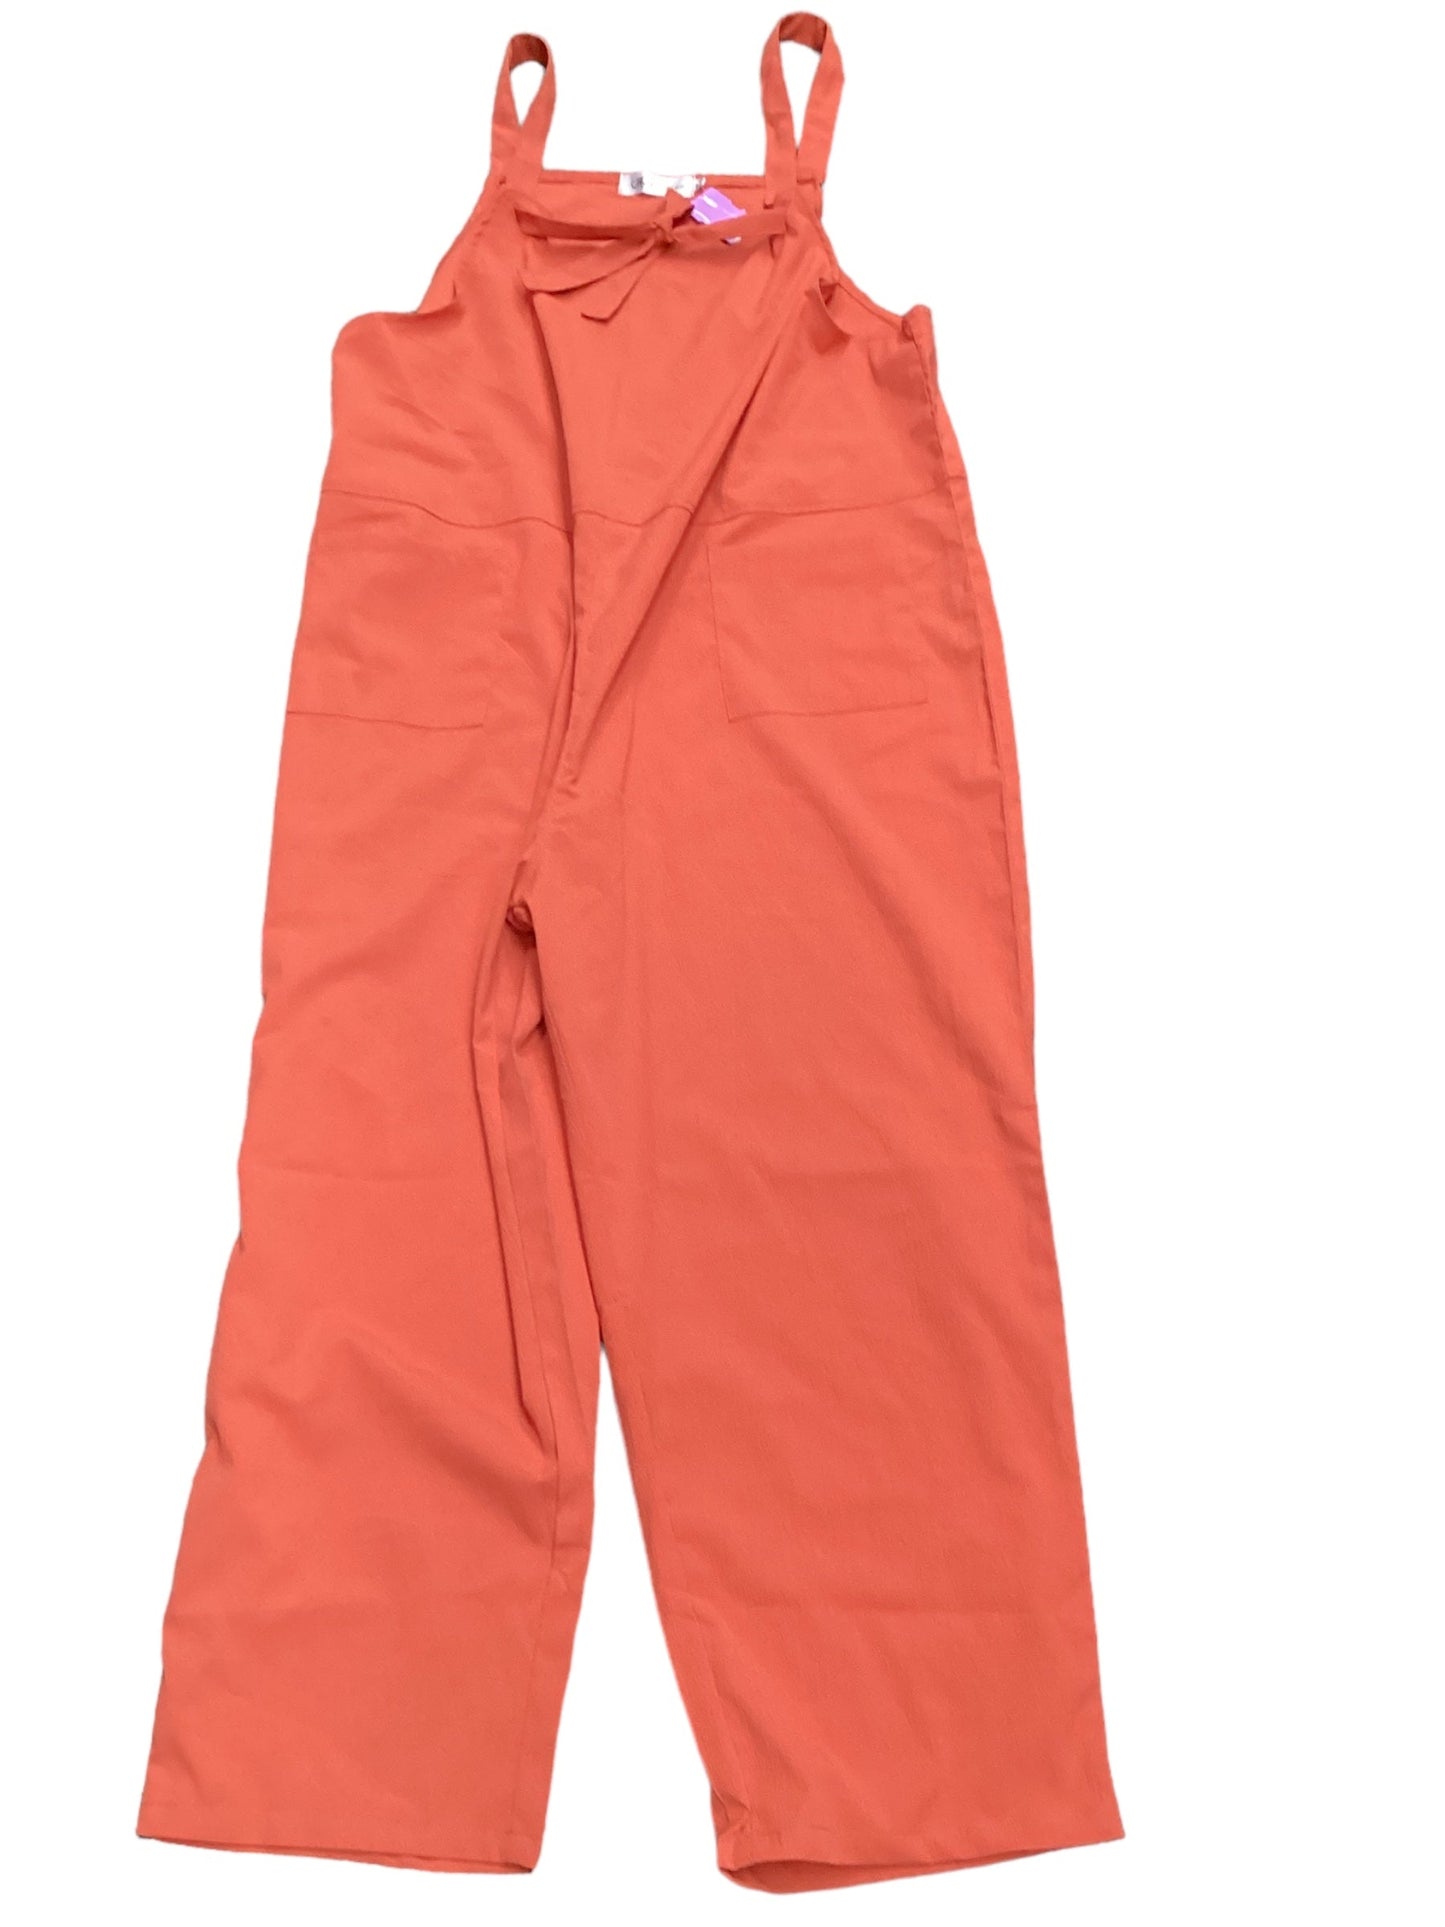 Orange Jumpsuit Clothes Mentor, Size 3x